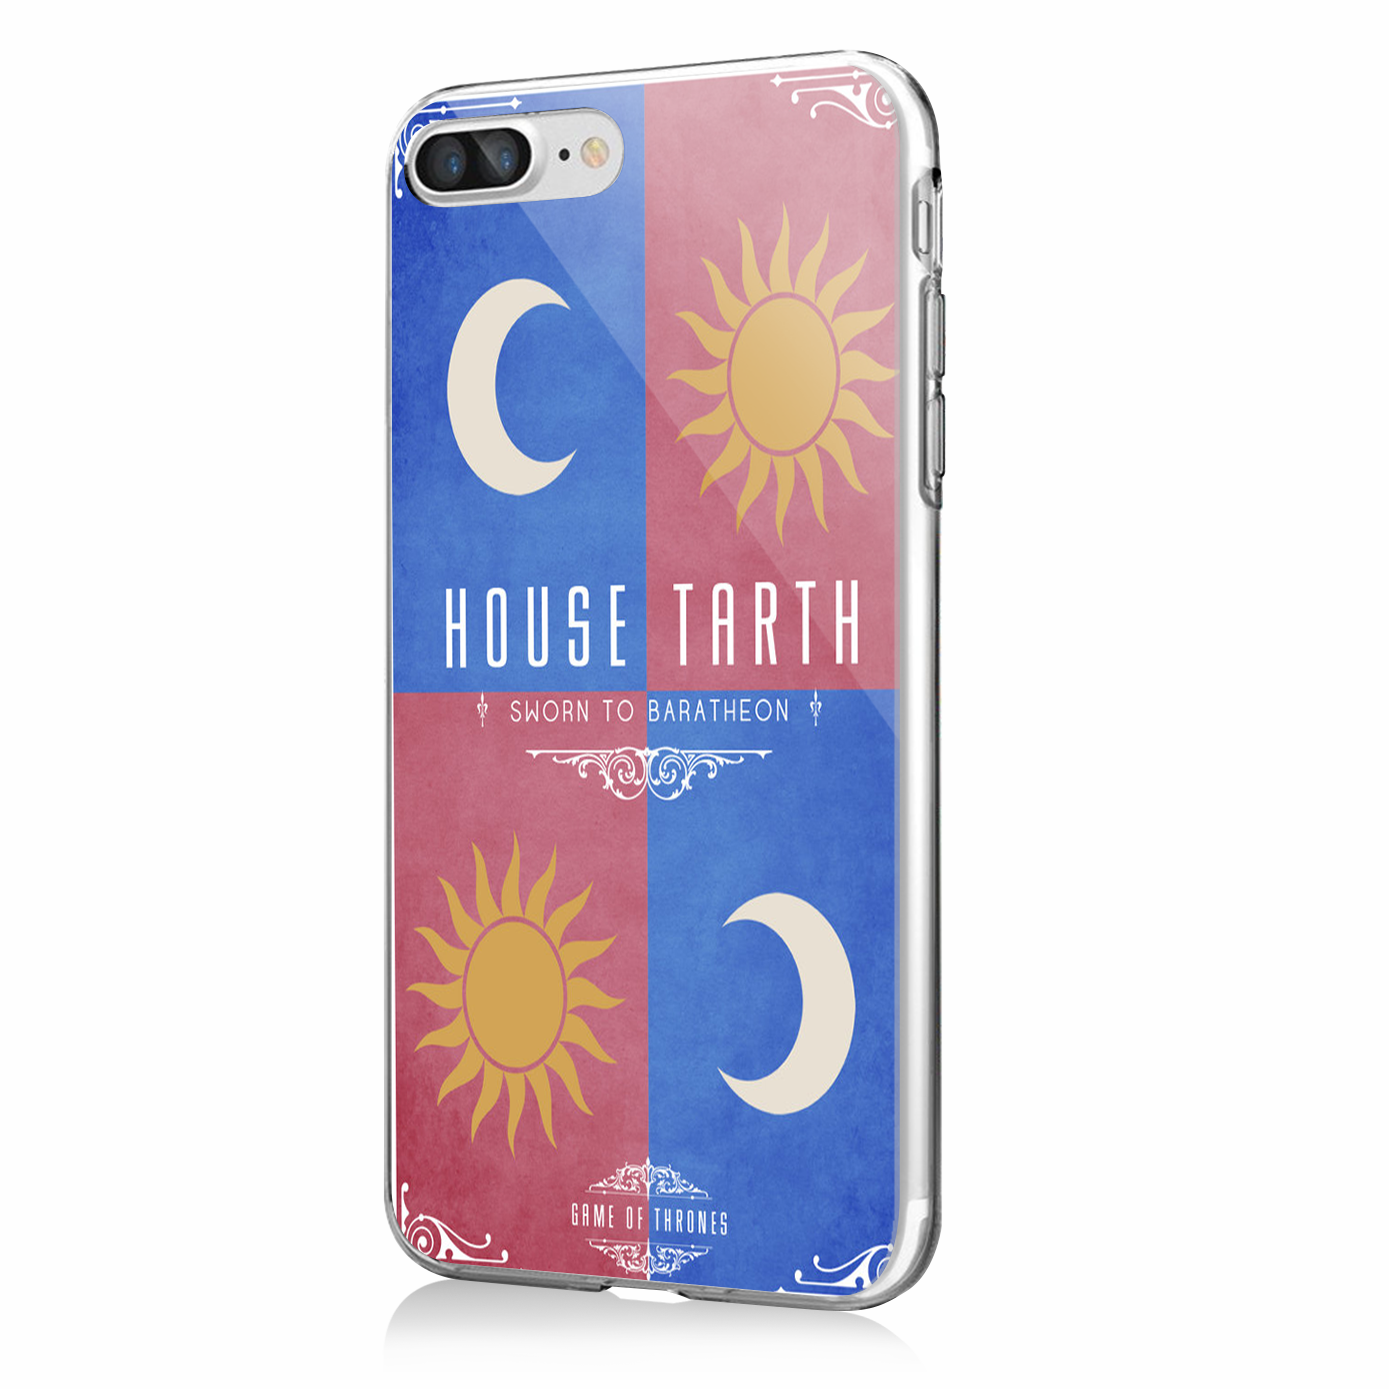 GoT House Tarth - iPhone 7 Plus / iPhone 8 Plus Carcasa Transparenta ...